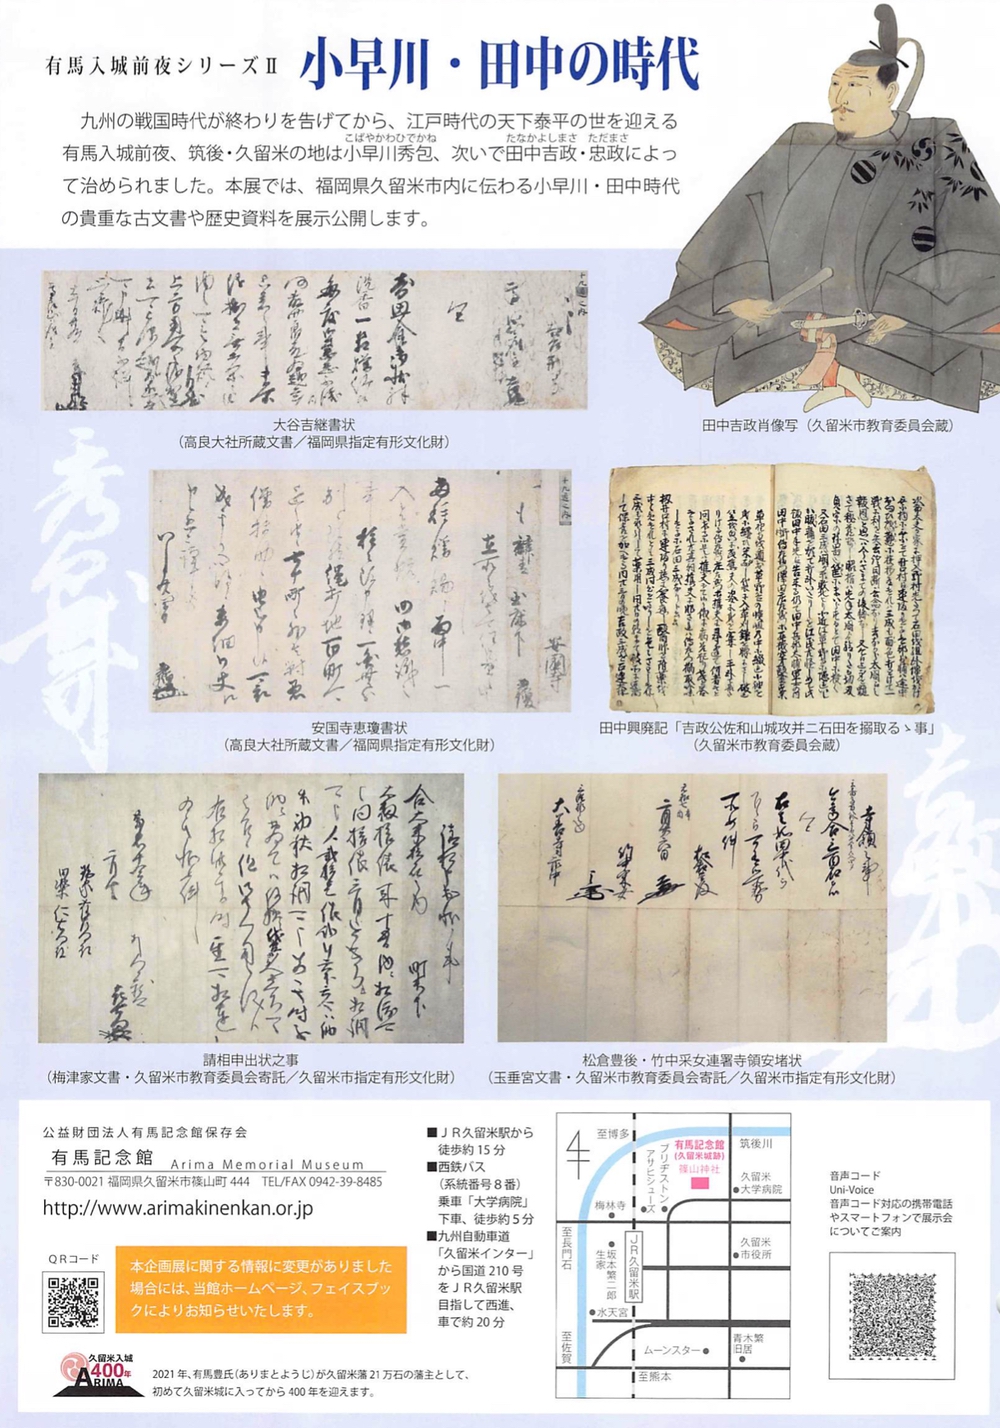 有馬入城前夜シリーズⅡ 小早川・田中の時代 貴重な古文書や歴史資料を展示公開